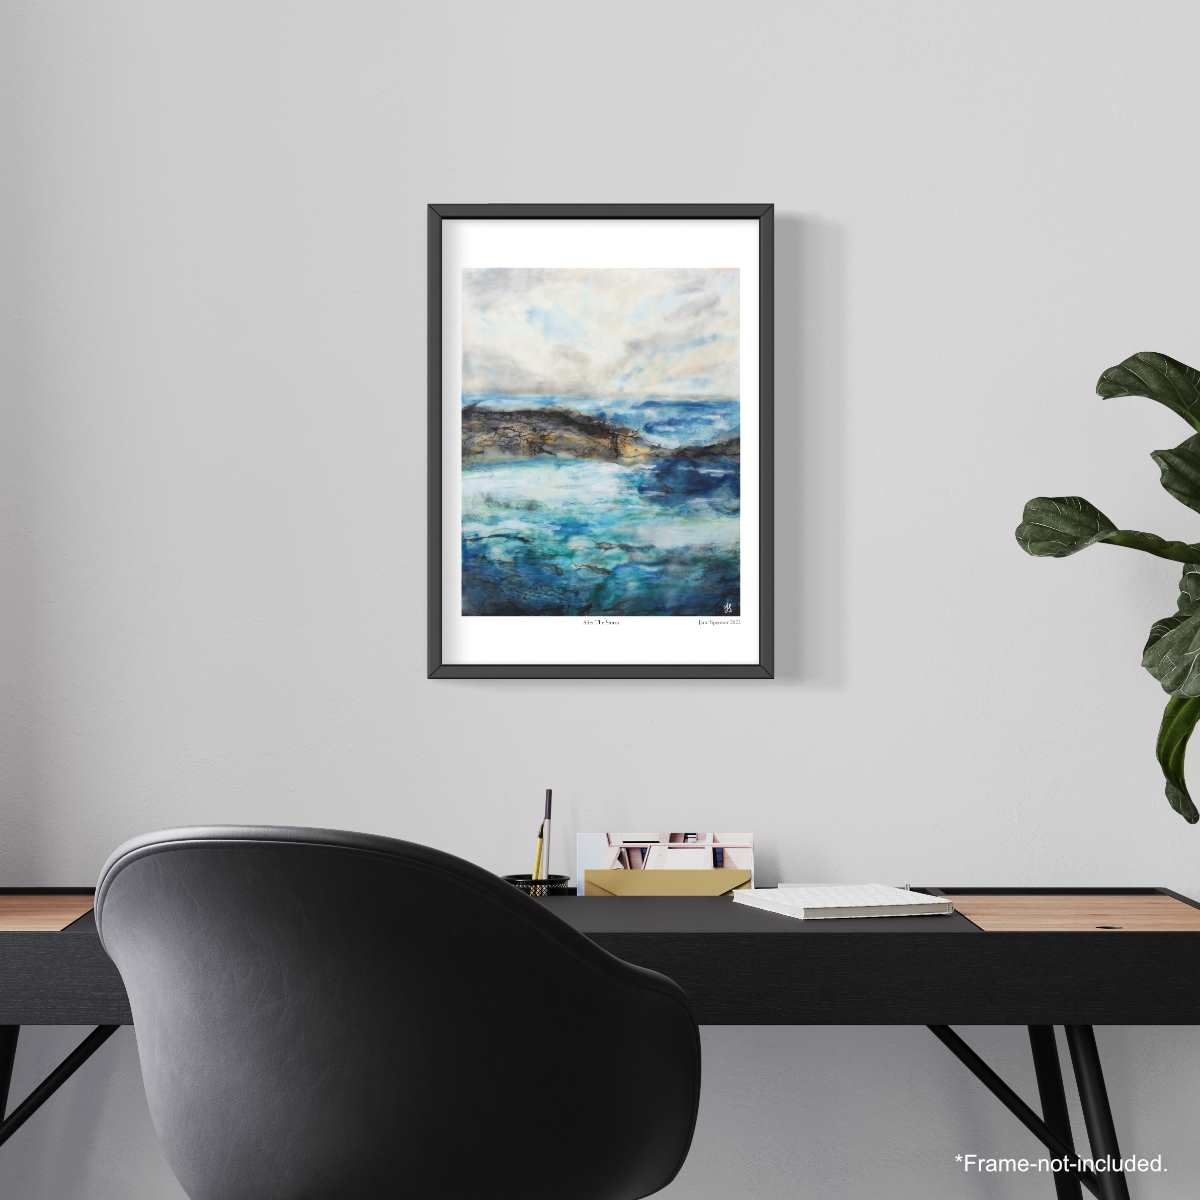 After The Storm | Seascape | Fine Art Print | Unframed - Jane Spooner Artist